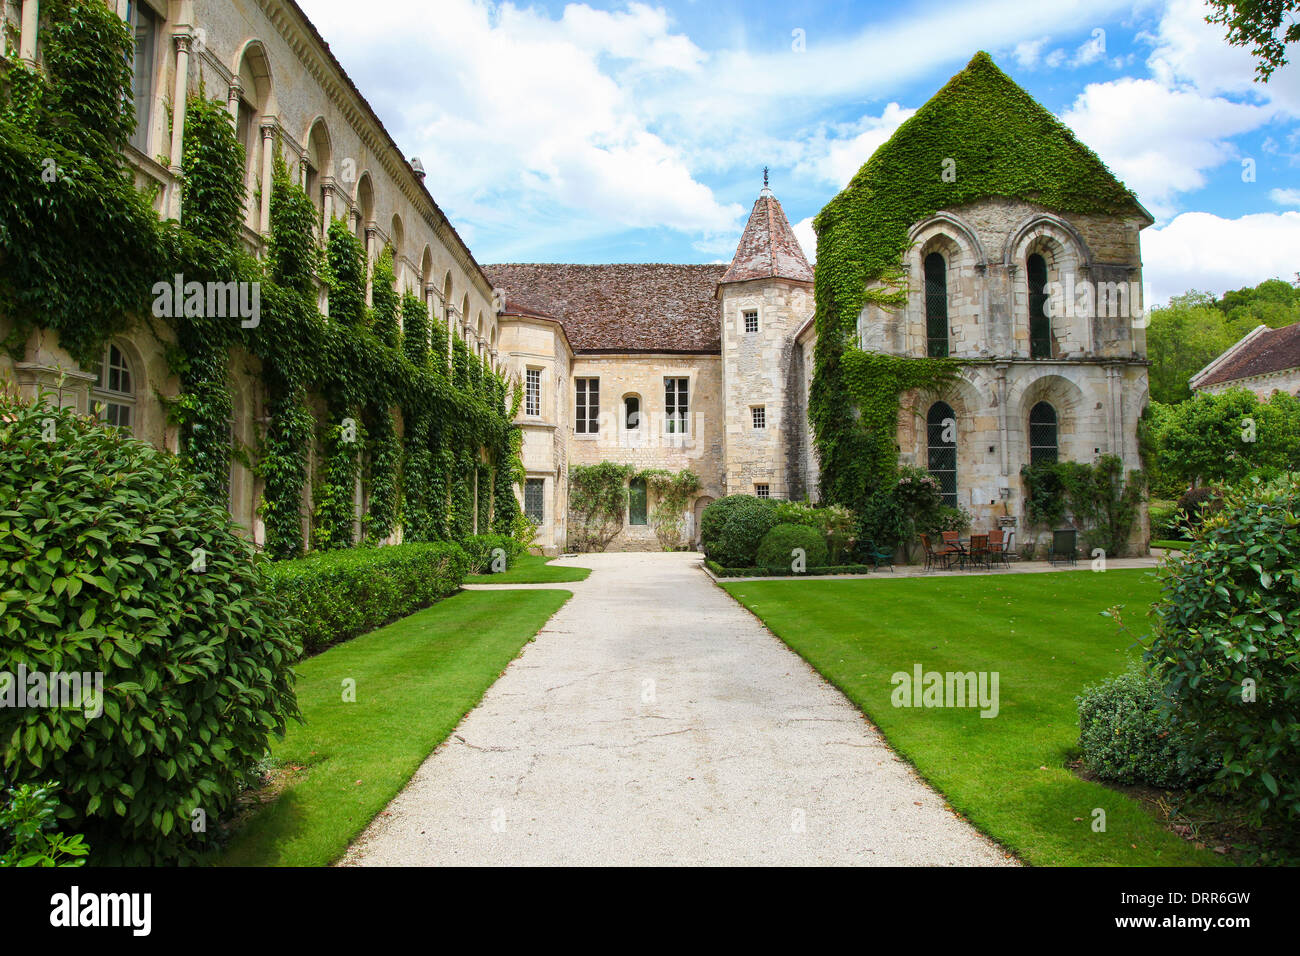 Abtei von Fontenay ist eine ehemalige Zisterzienserabtei befindet sich in der Gemeinde von Marmagne, im Département Côte-d ' or, Frankreich. Stockfoto